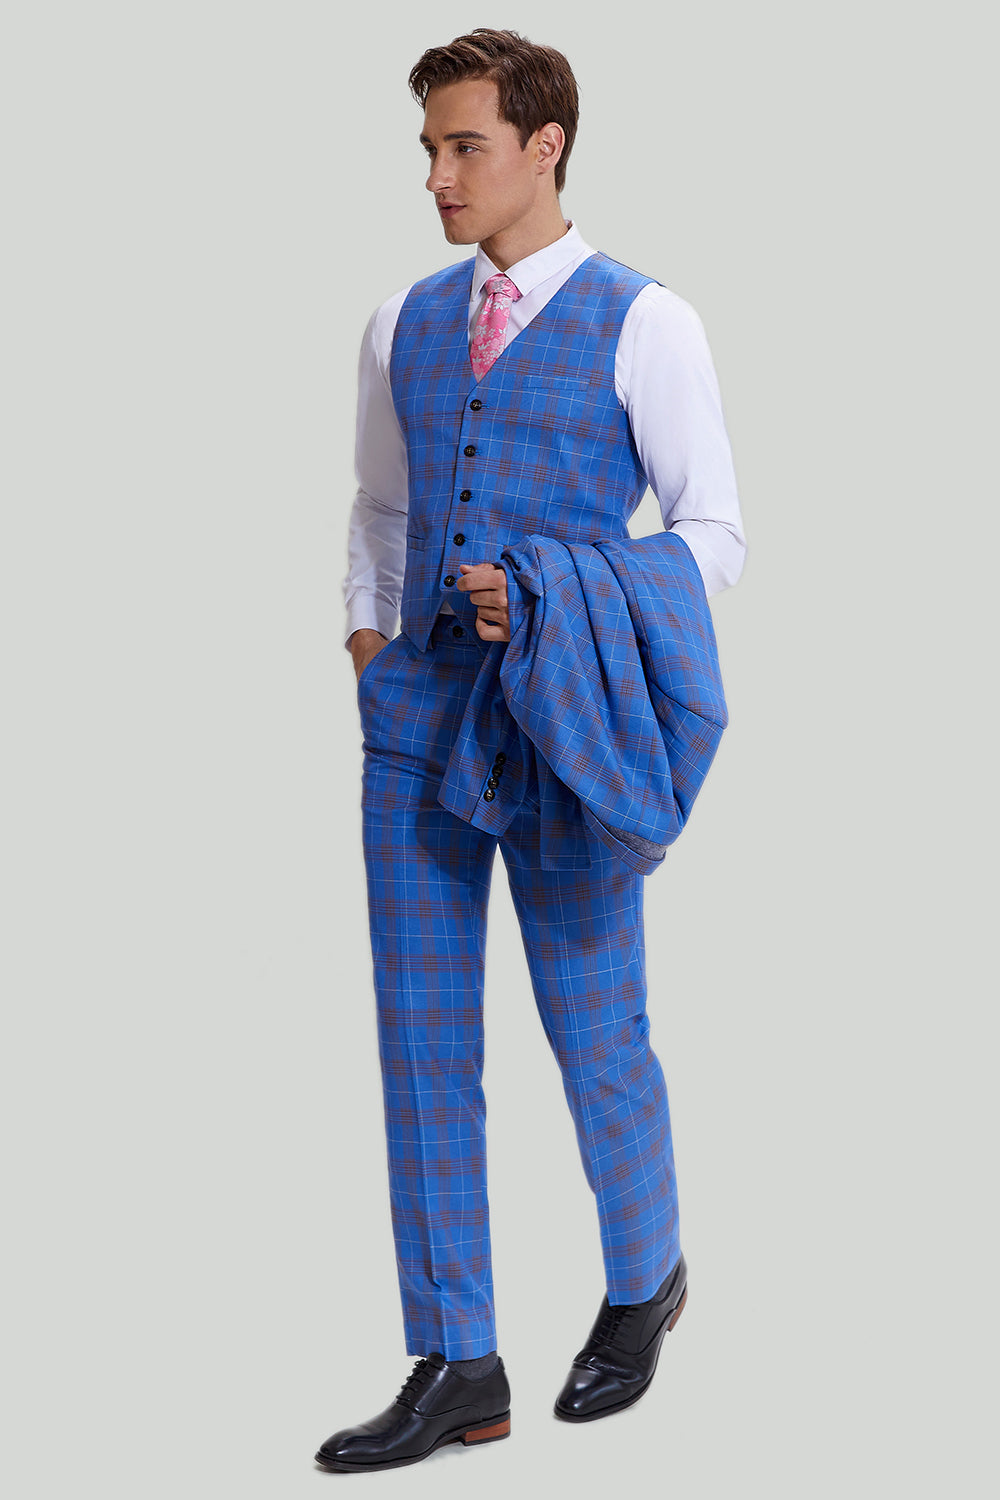 Blue Plaid Men's 3 Piece Tuxedo Suits